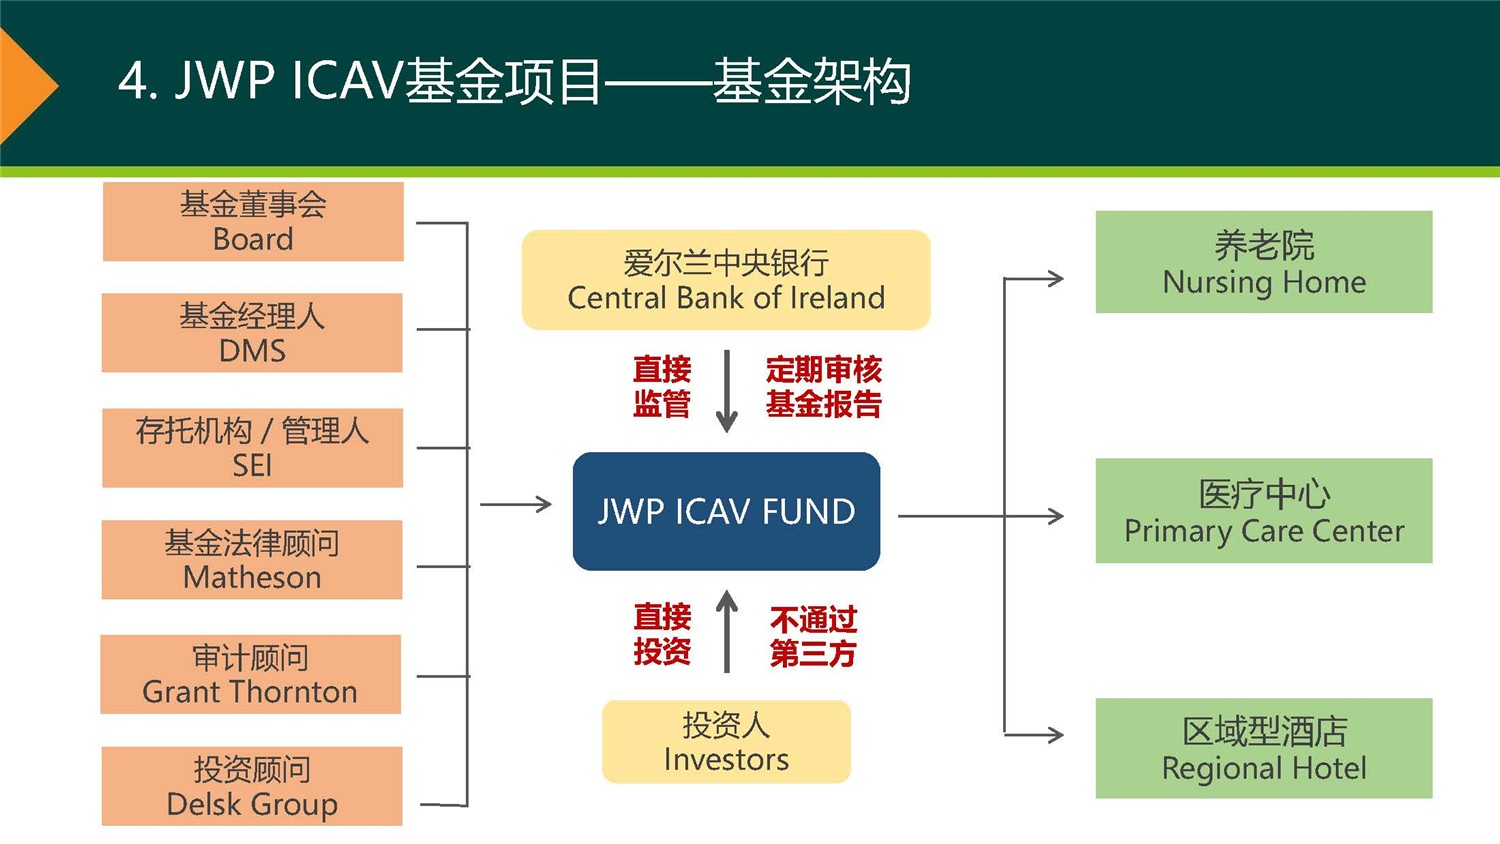 20190312_爱尔兰JWP ICAV基金项目_市场推广PPT简版(1)_页面_10.jpg